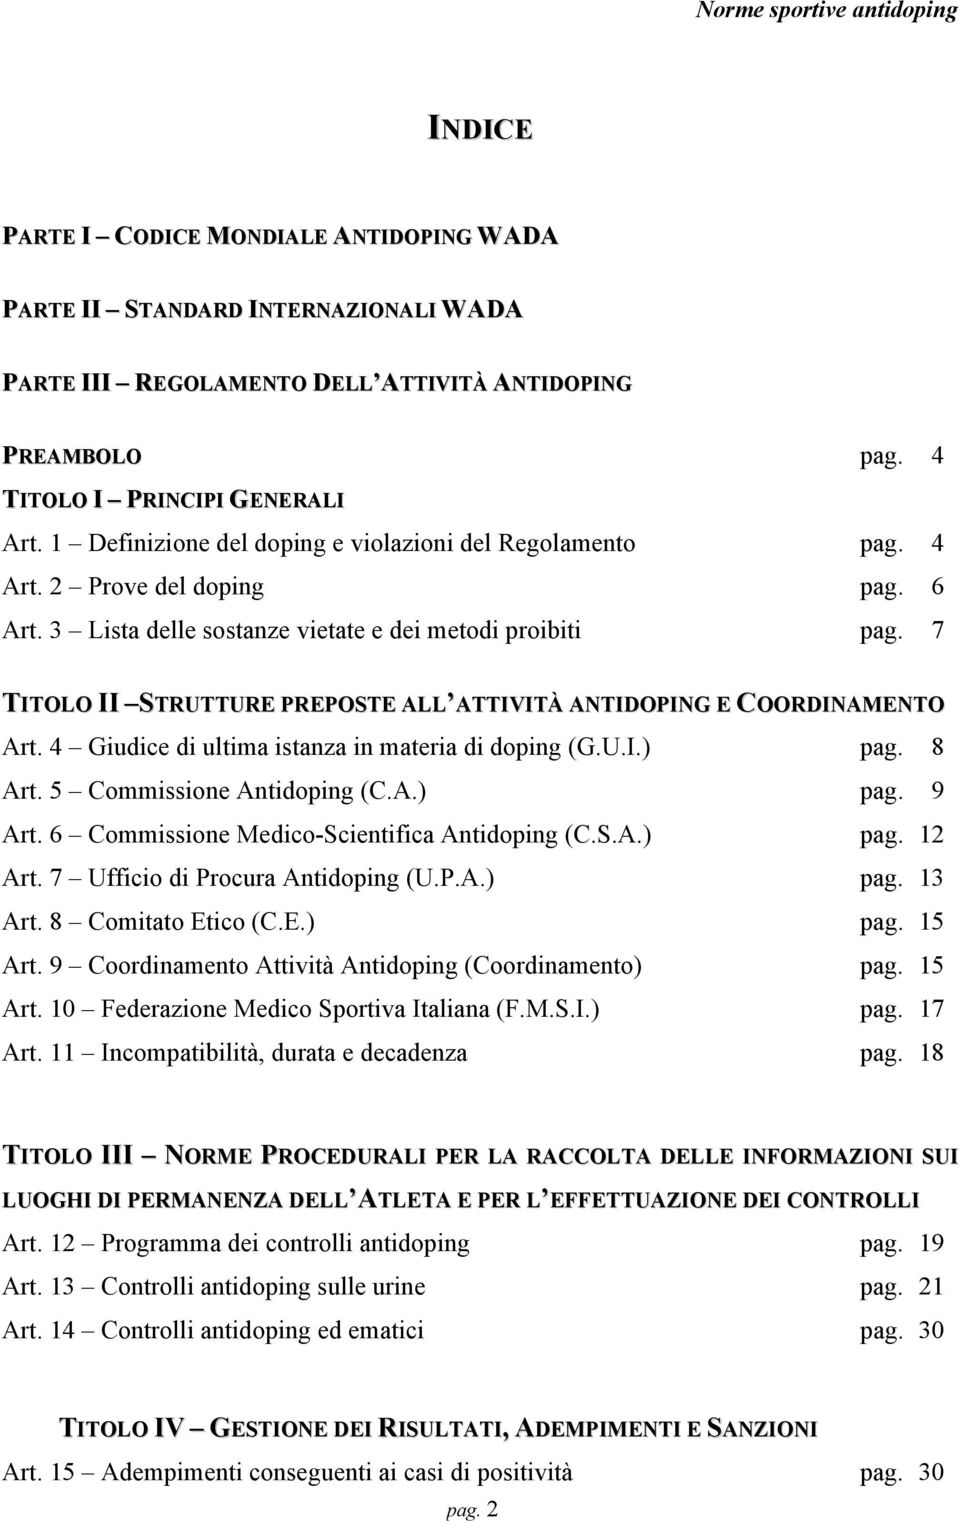 7 TITOLO II STRUTTURE PREPOSTE ALL ATTIVITÀ ANTIDOPING E COORDINAMENTO Art. 4 Giudice di ultima istanza in materia di doping (G.U.I.) pag. 8 Art. 5 Commissione Antidoping (C.A.) pag. 9 Art.